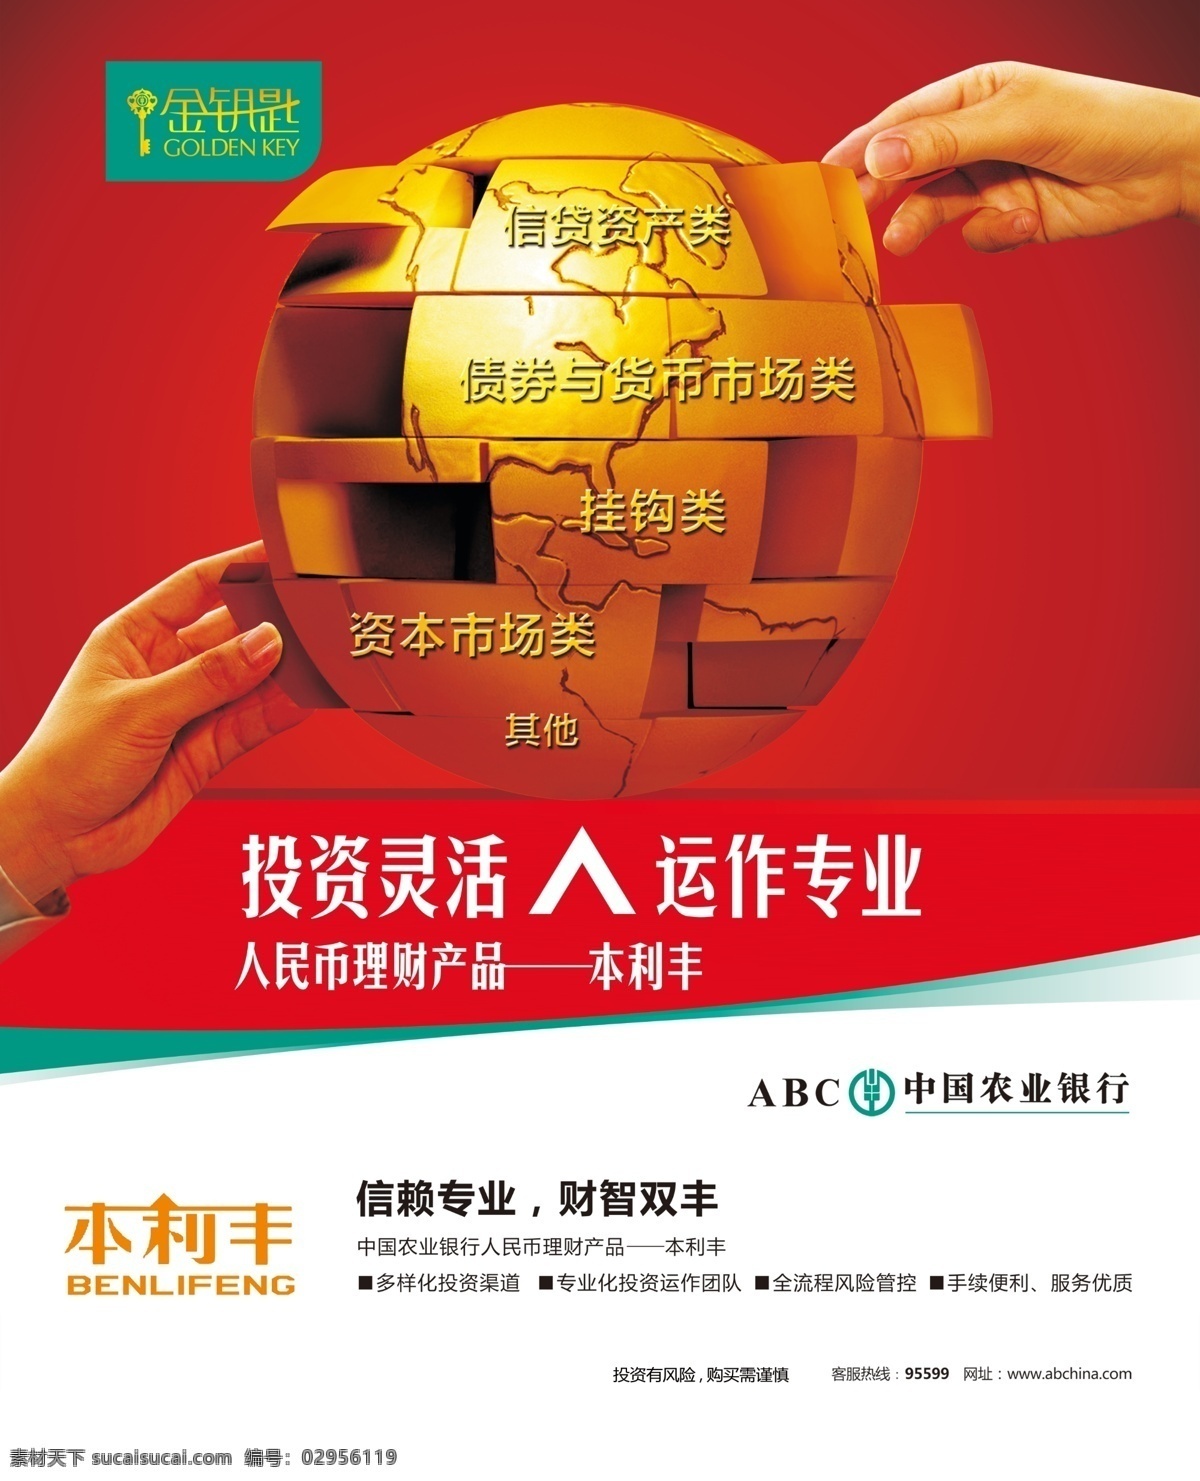 中国农业银行 理财 产品 农行 银行 专业 财智 债券 资本 广告设计模板 源文件